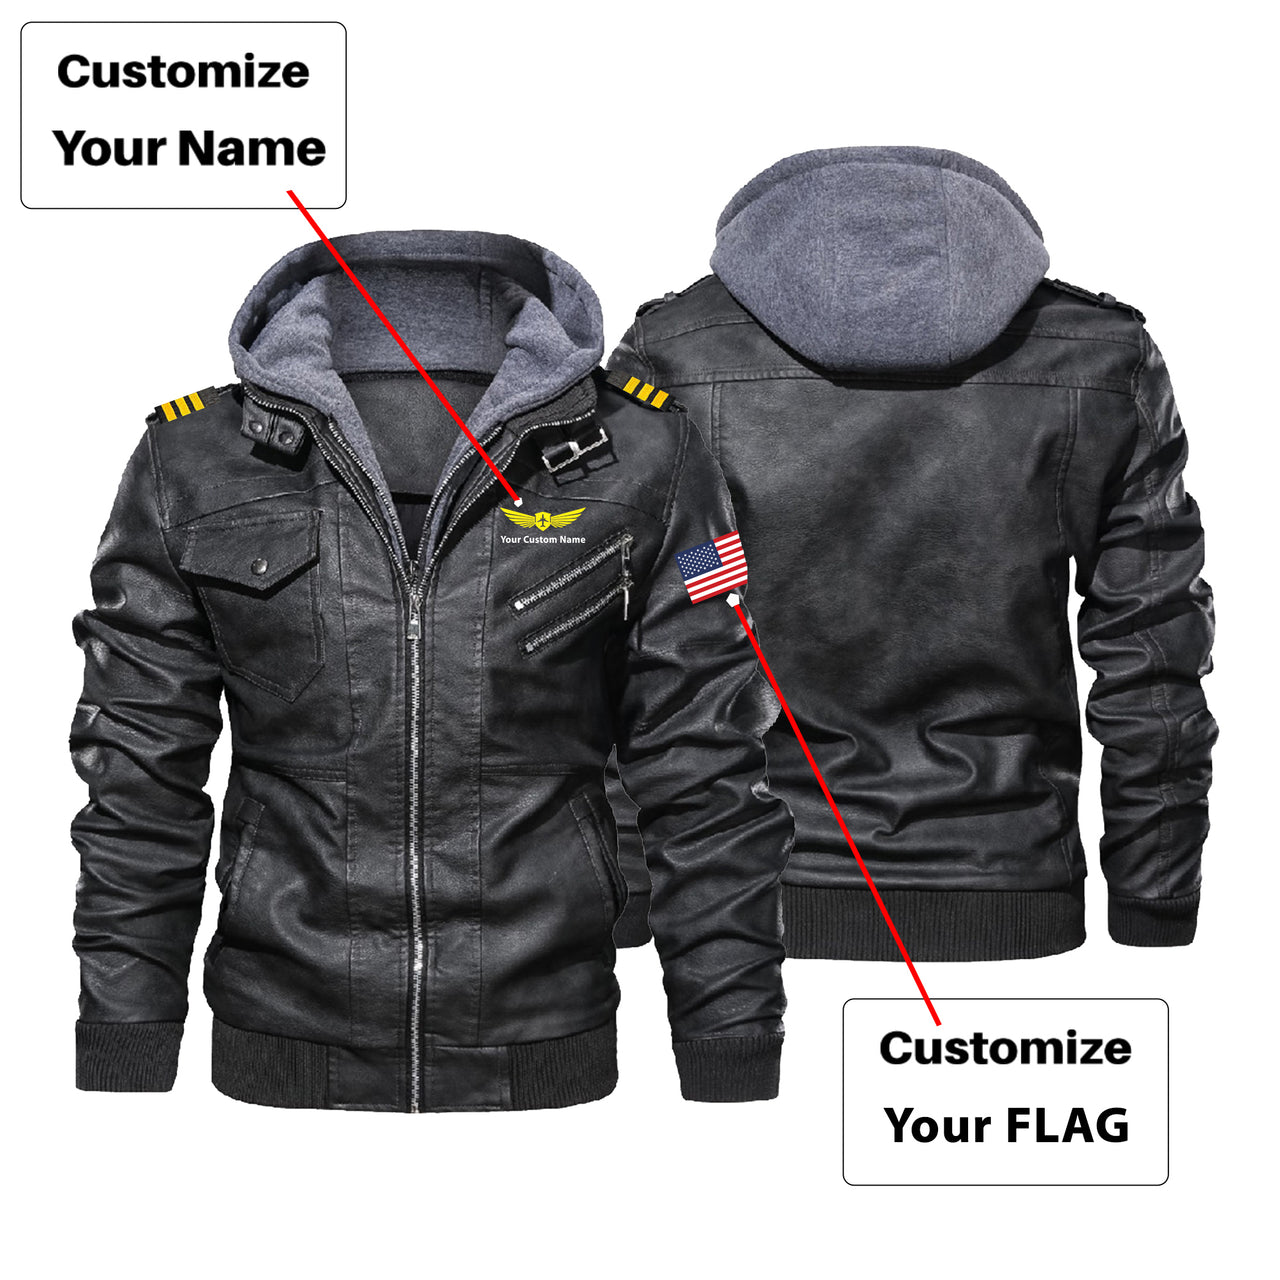 Custom Flag & Name with EPAULETTES "Badge 2" Designed Hooded Leather Jackets